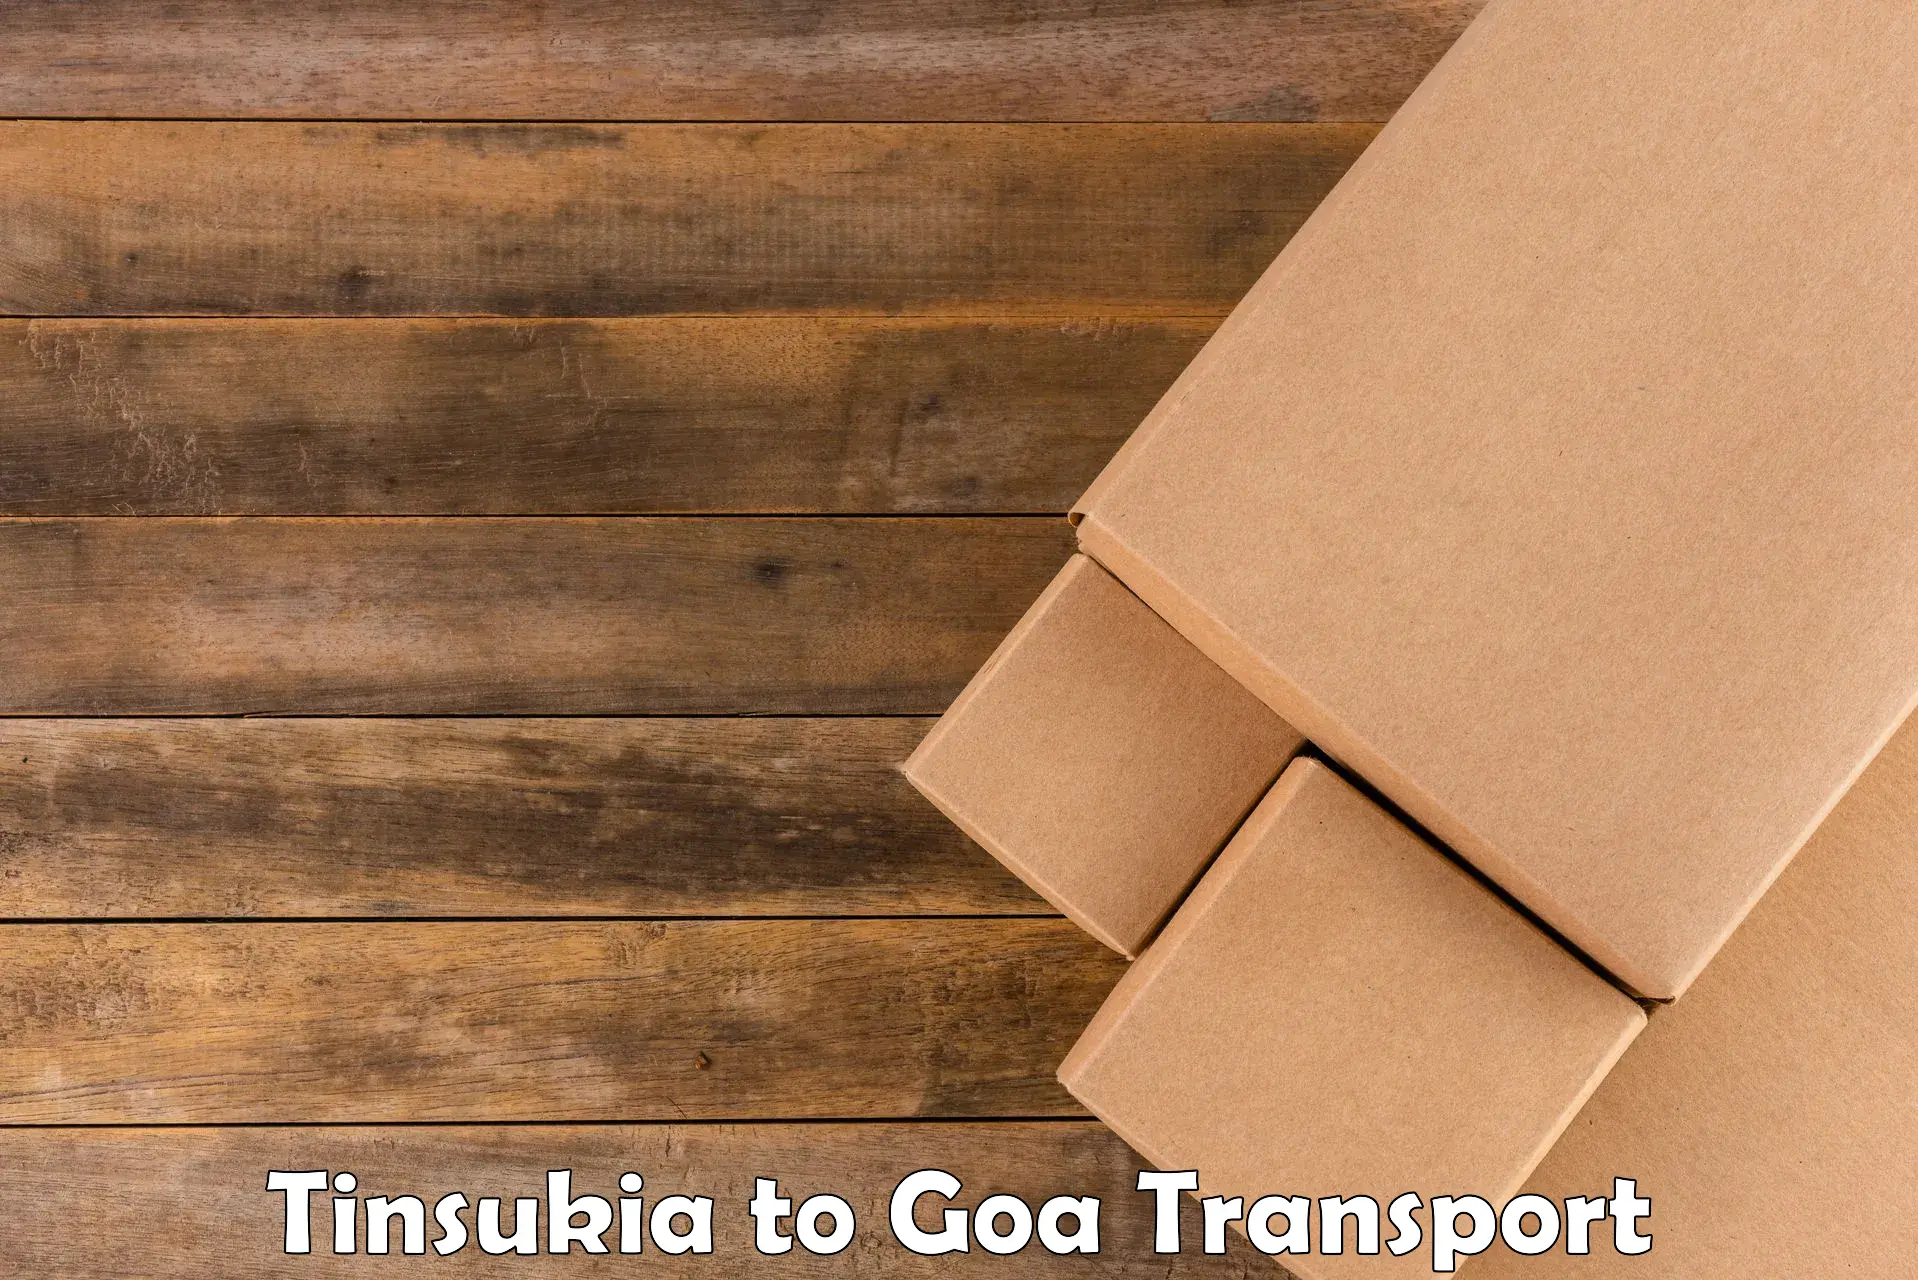 Lorry transport service Tinsukia to IIT Goa